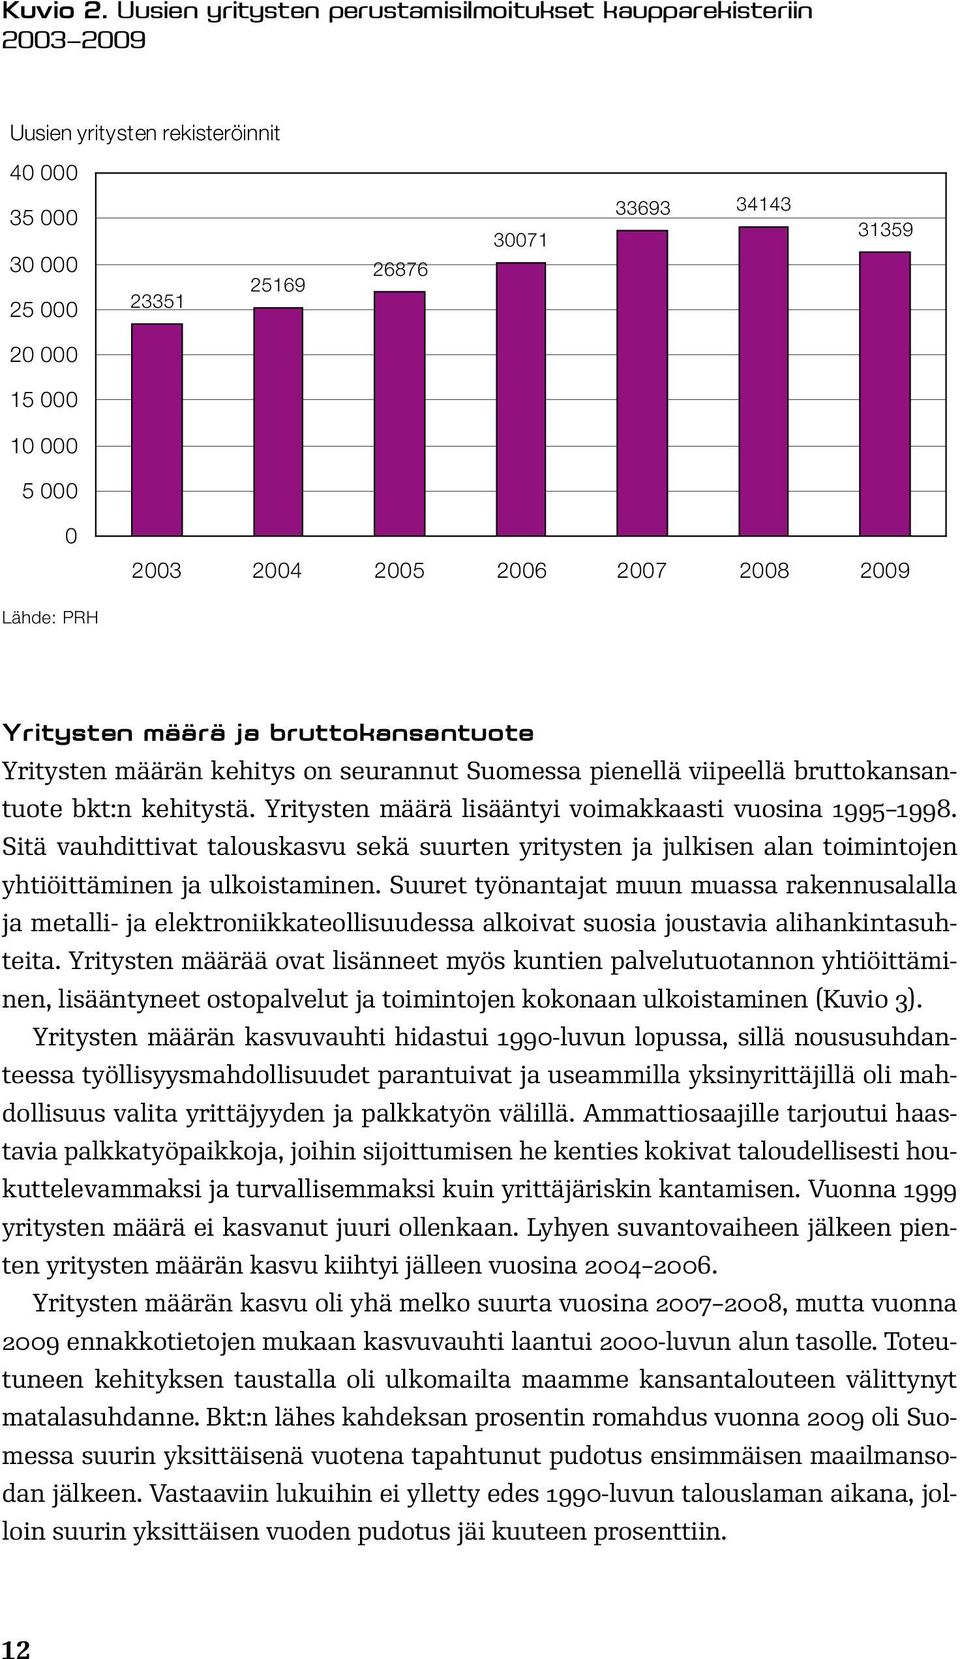 2003 2004 2005 2006 2007 2008 2009 Lähde: PRH Yritysten määrä ja bruttokansantuote Yritysten määrän kehitys on seurannut Suomessa pienellä viipeellä bruttokansantuote bkt:n kehitystä.